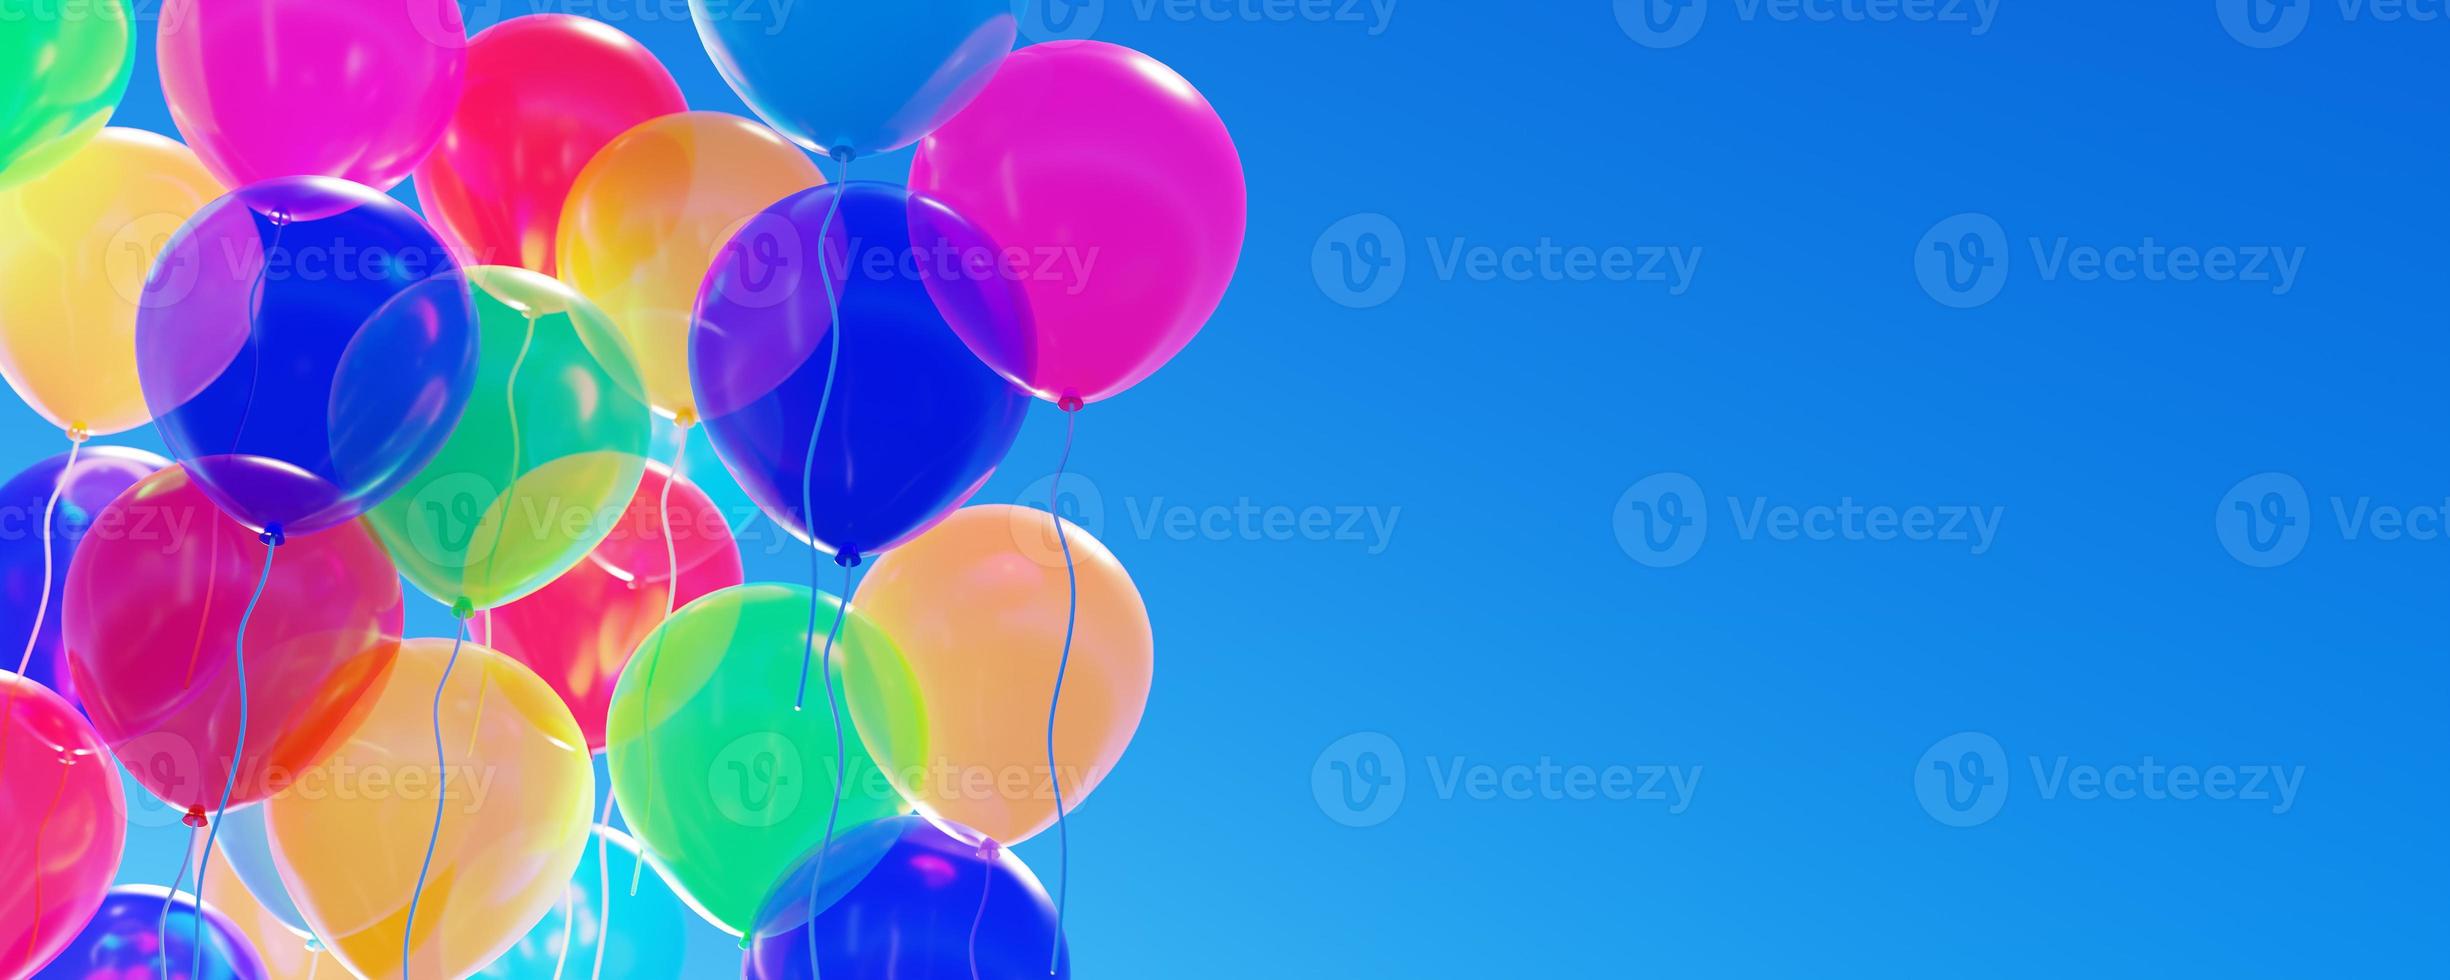 Panoramablick auf bunte Luftballons auf blauem Himmelshintergrund. konzept der feier, grußbanner, geburtstagsfeier, glück, festivalhintergrund. 3D-Rendering. foto